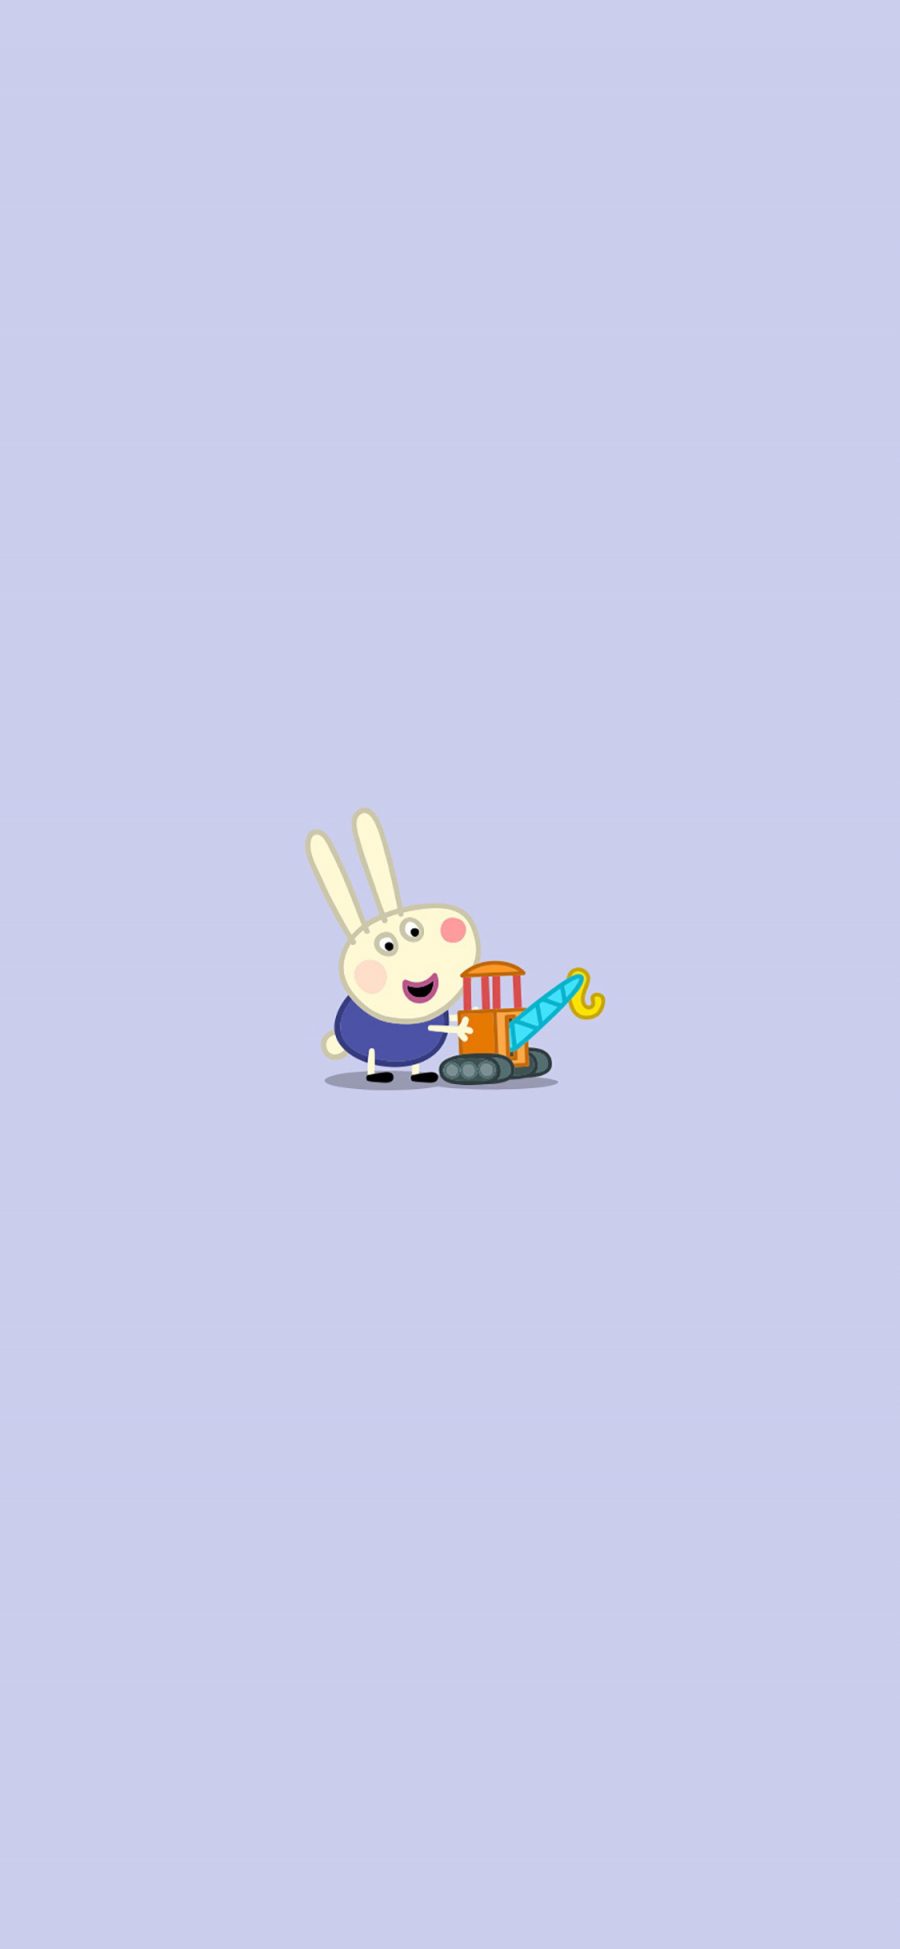 [2436×1125]小兔瑞贝卡 动画 小猪佩奇 可爱 胡萝卜 苹果手机动漫壁纸图片